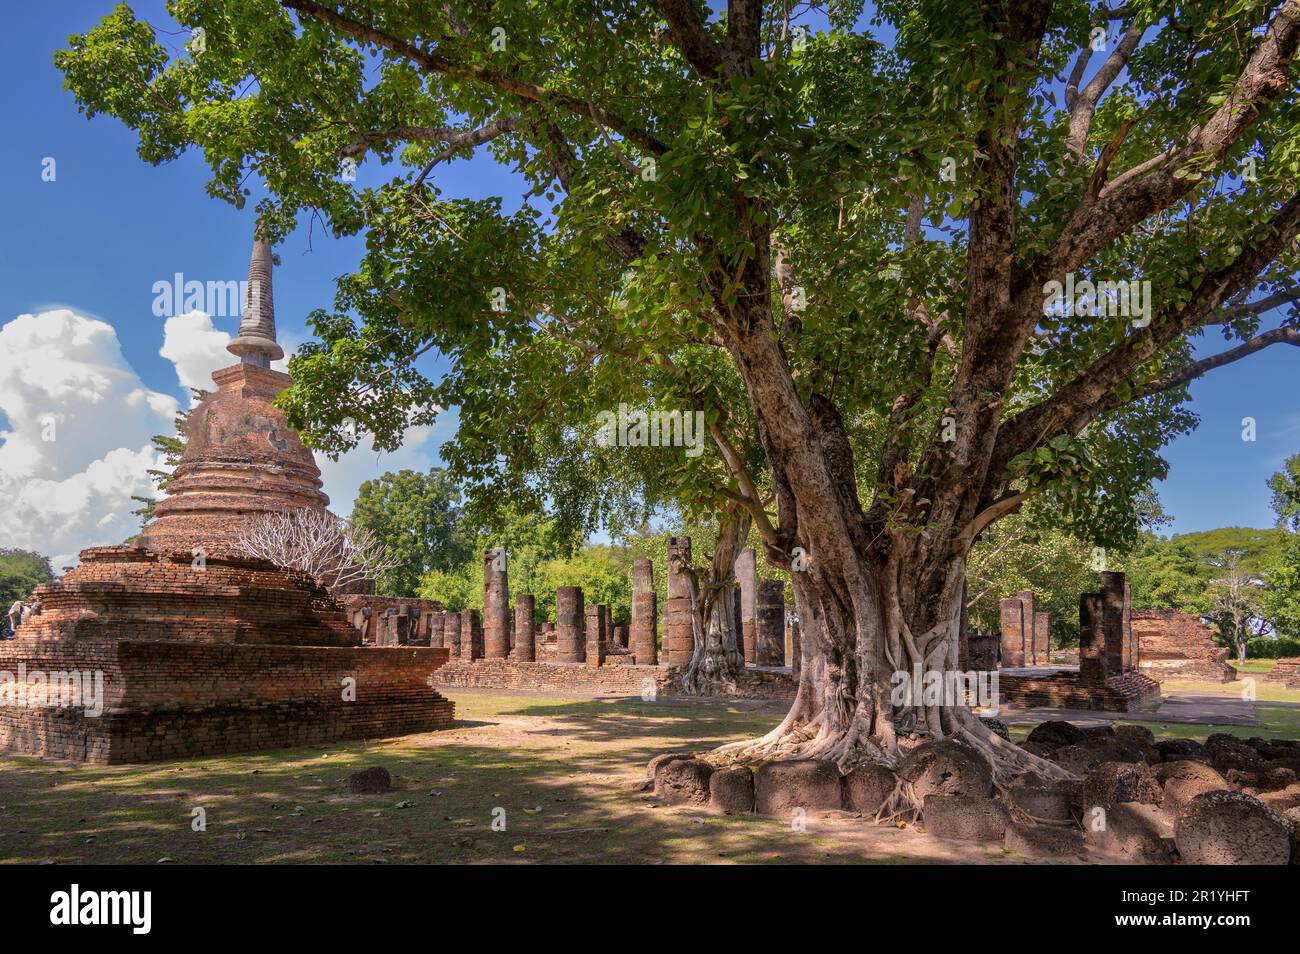 Wat Chang LOM, est un complexe de temples bouddhistes (wat) dans le Parc historique de Sukhothai, province de Sukhothai dans la région nord de la Thaïlande Banque D'Images